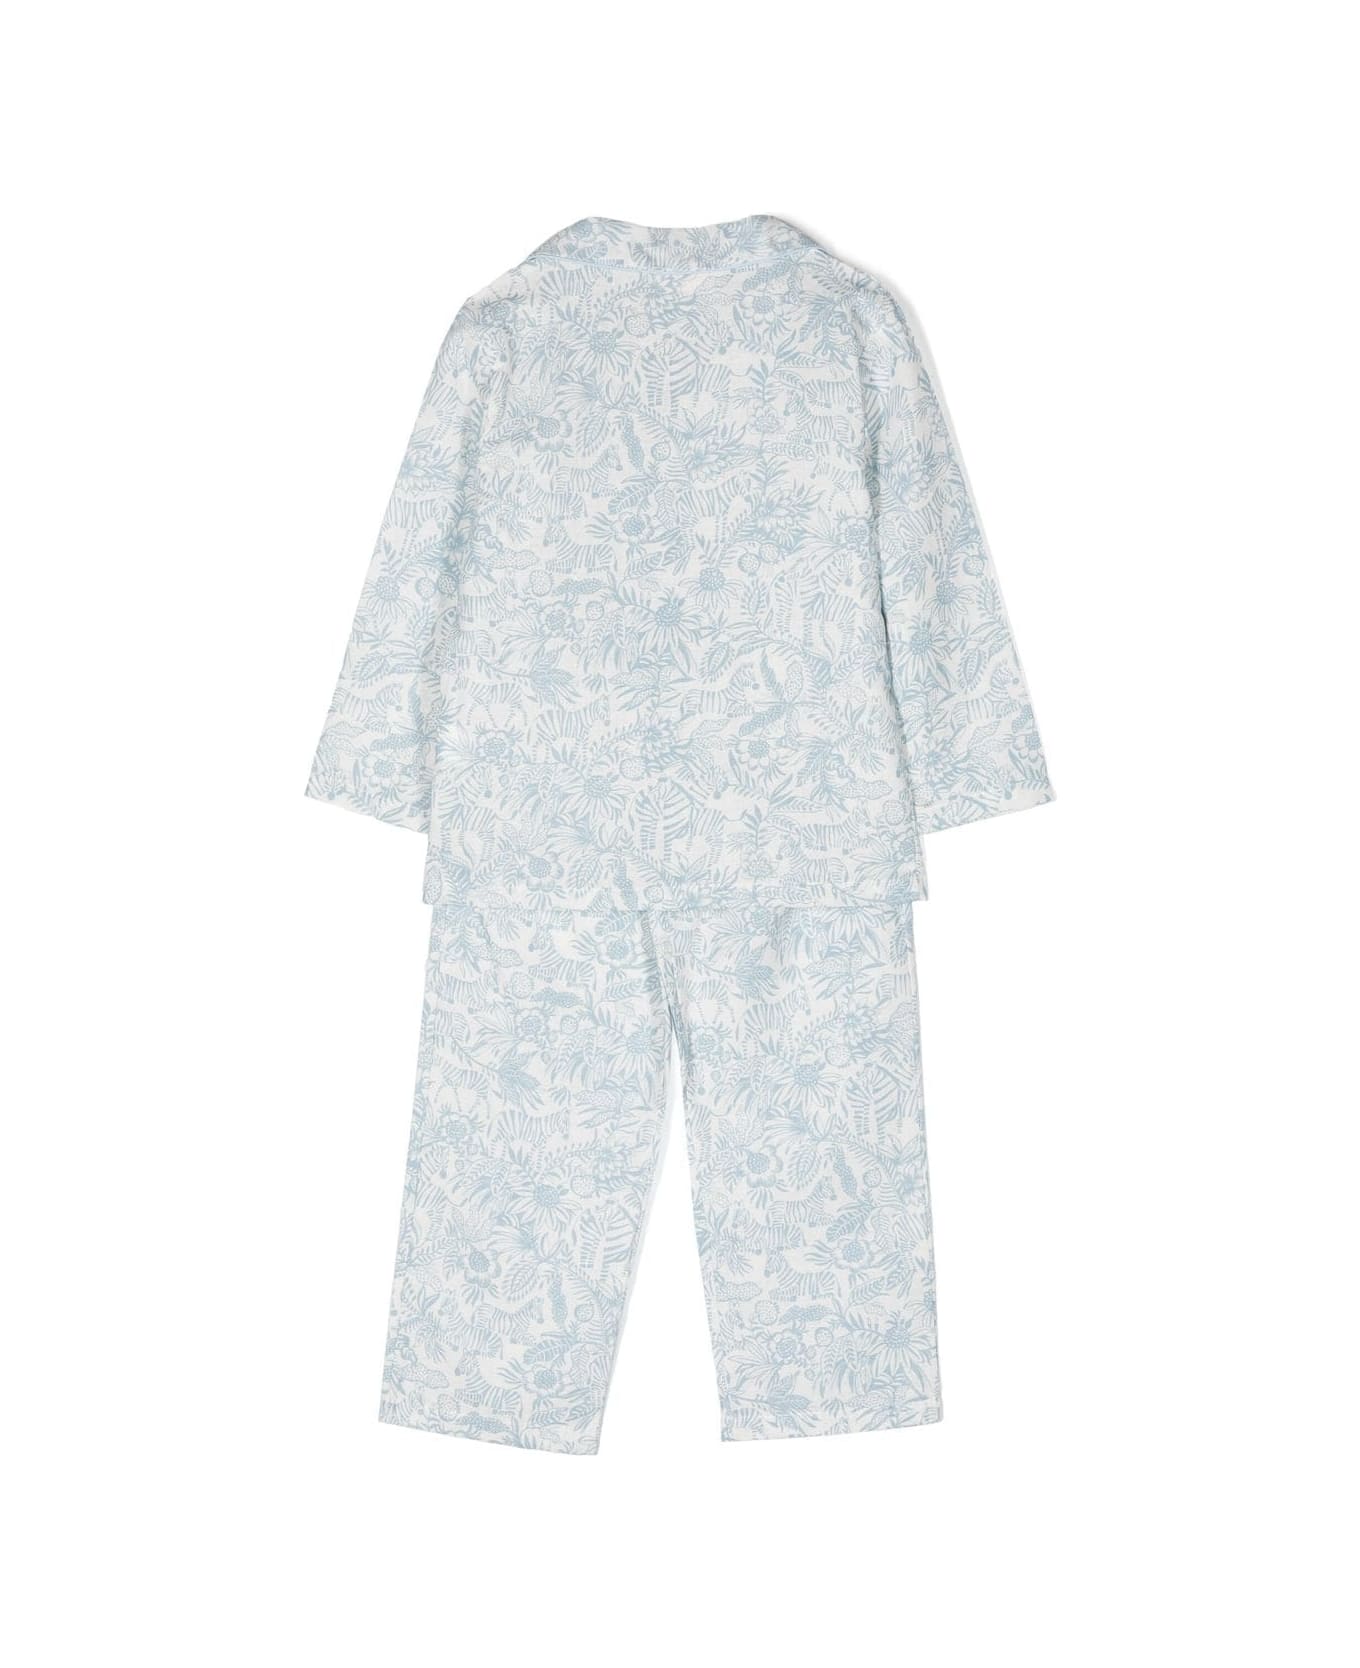 Story Loris Pajamas With Print - White